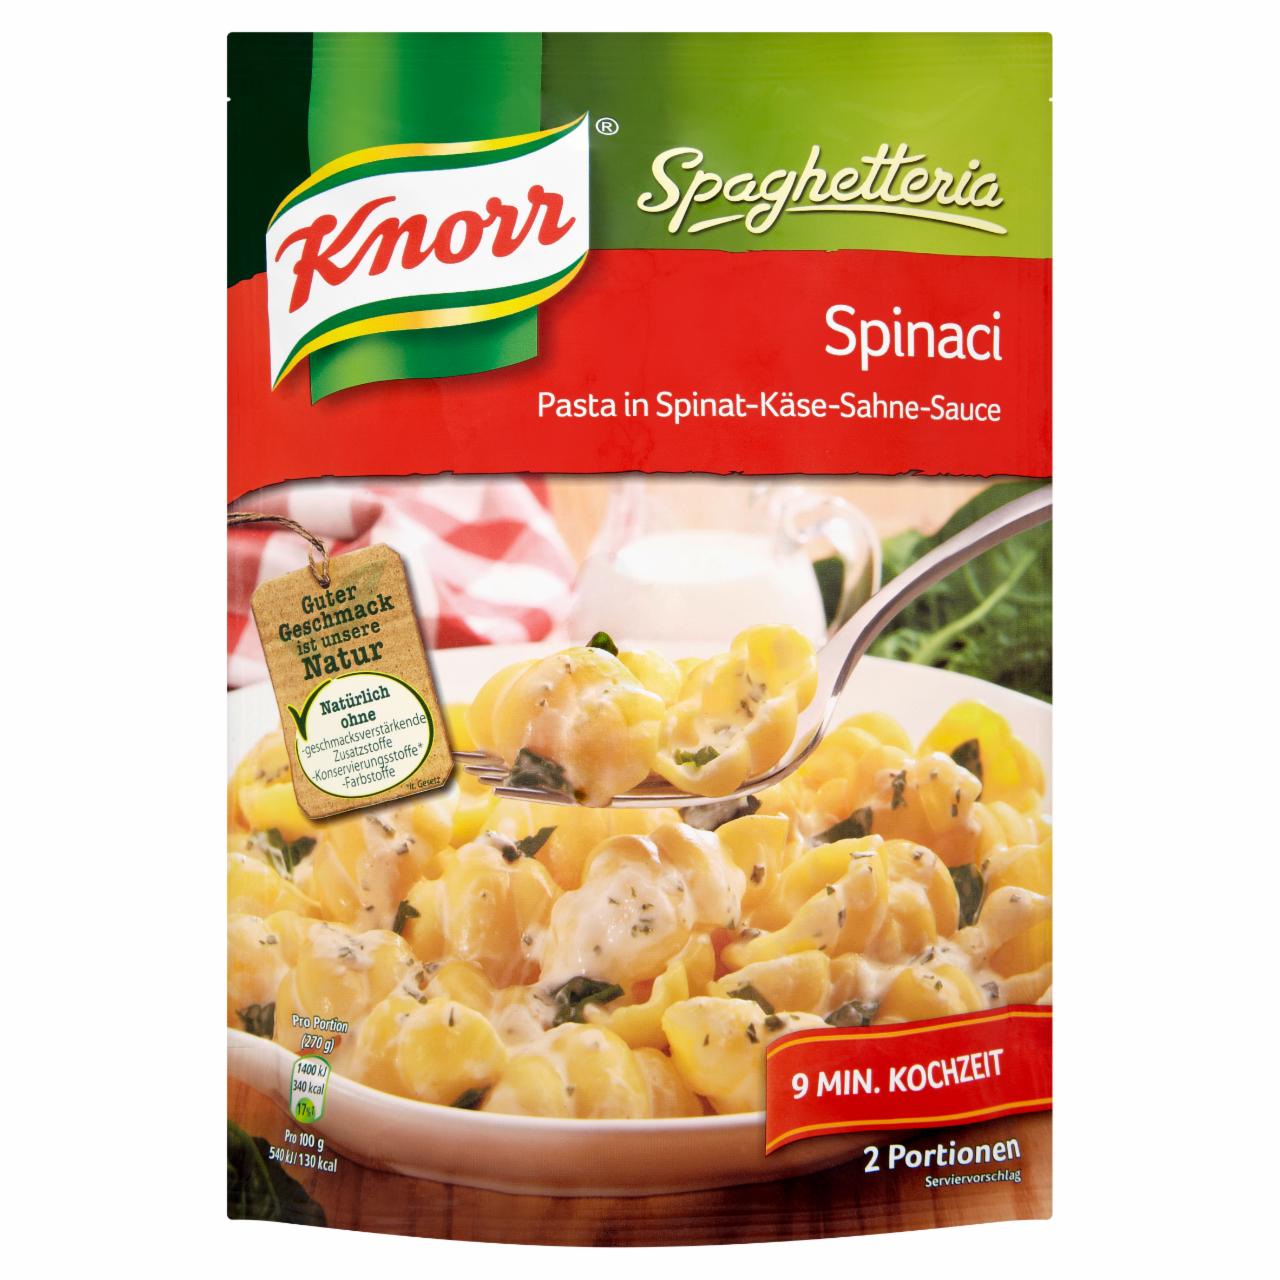 Képek - Knorr Spaghetteria tészta spenótos szósszal 164 g